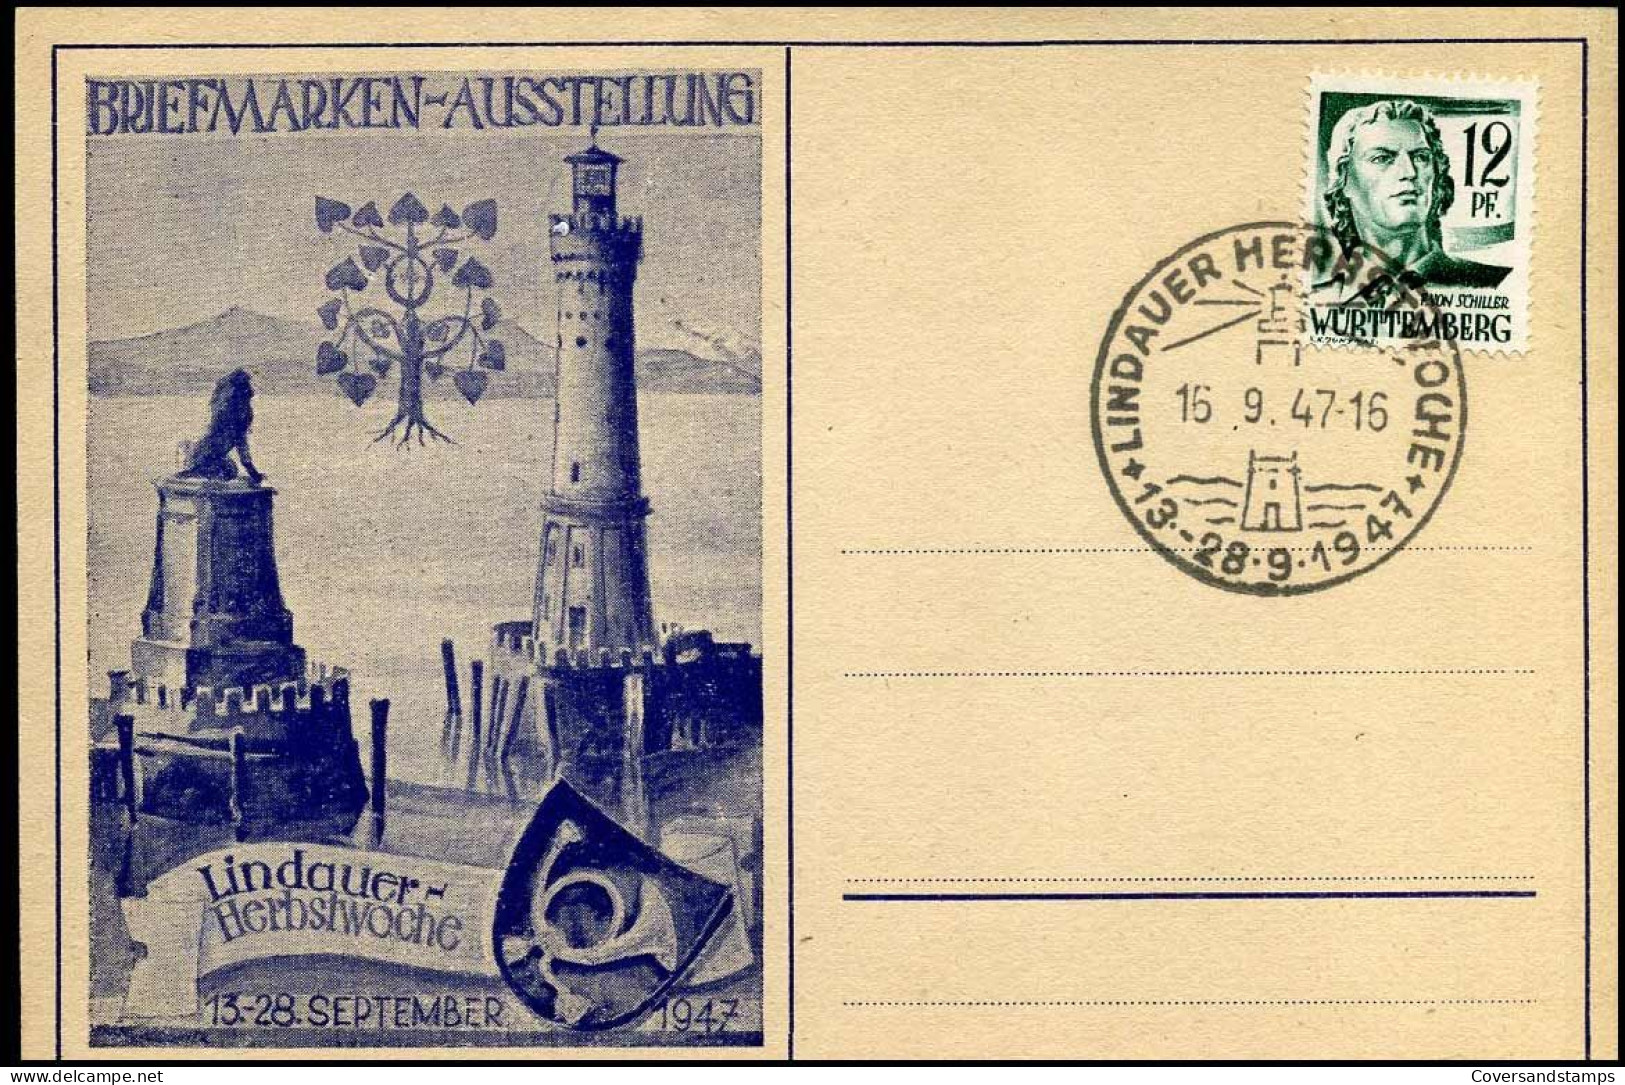 Württemberg - Postkarte Briefmarken Ausstellung Lindauer Herbstwoche - 15-09-1947 - Wurtemberg